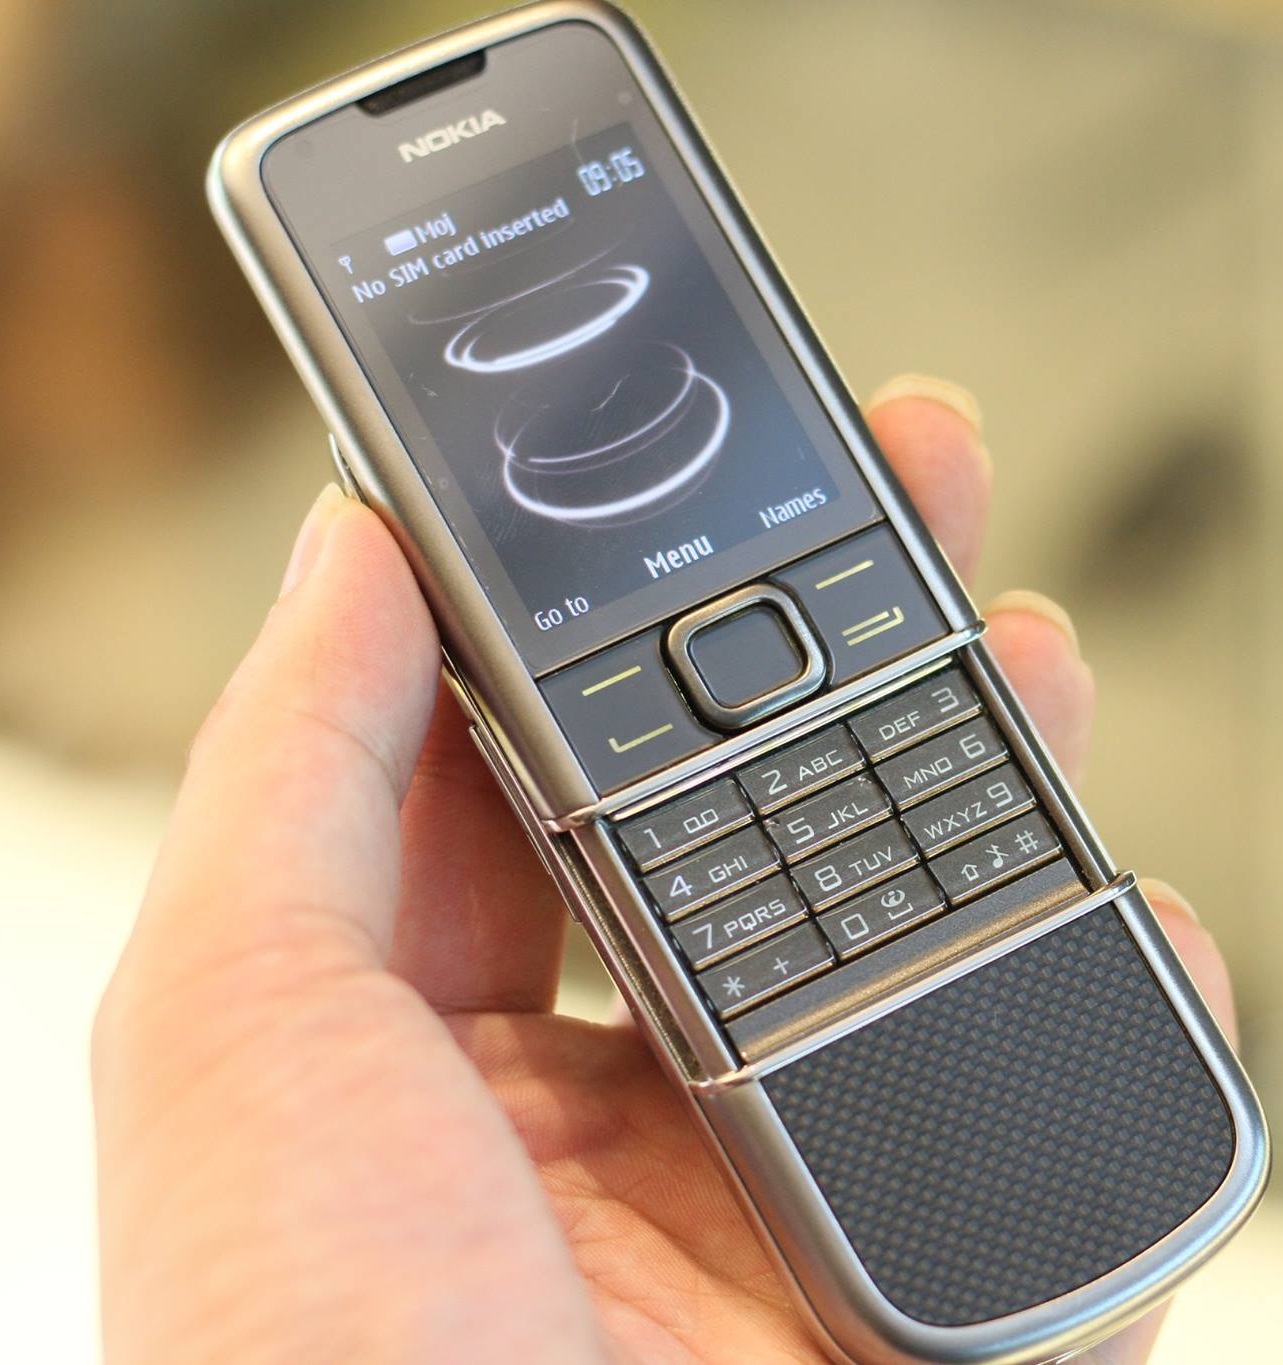 Nokia 8800 Carbon Arte: Sự hoàn hảo trong thiết kế, Nokia 8800 Carbon Arte được chế tác bằng chất liệu sợi carbon chất lượng cao. Hãy đắm chìm trong âm thanh tuyệt vời đến từ loa stereo tích hợp. Đây là thiết bị vô cùng độc đáo và hấp dẫn cho những ai yêu thích thiết kế độc đáo.